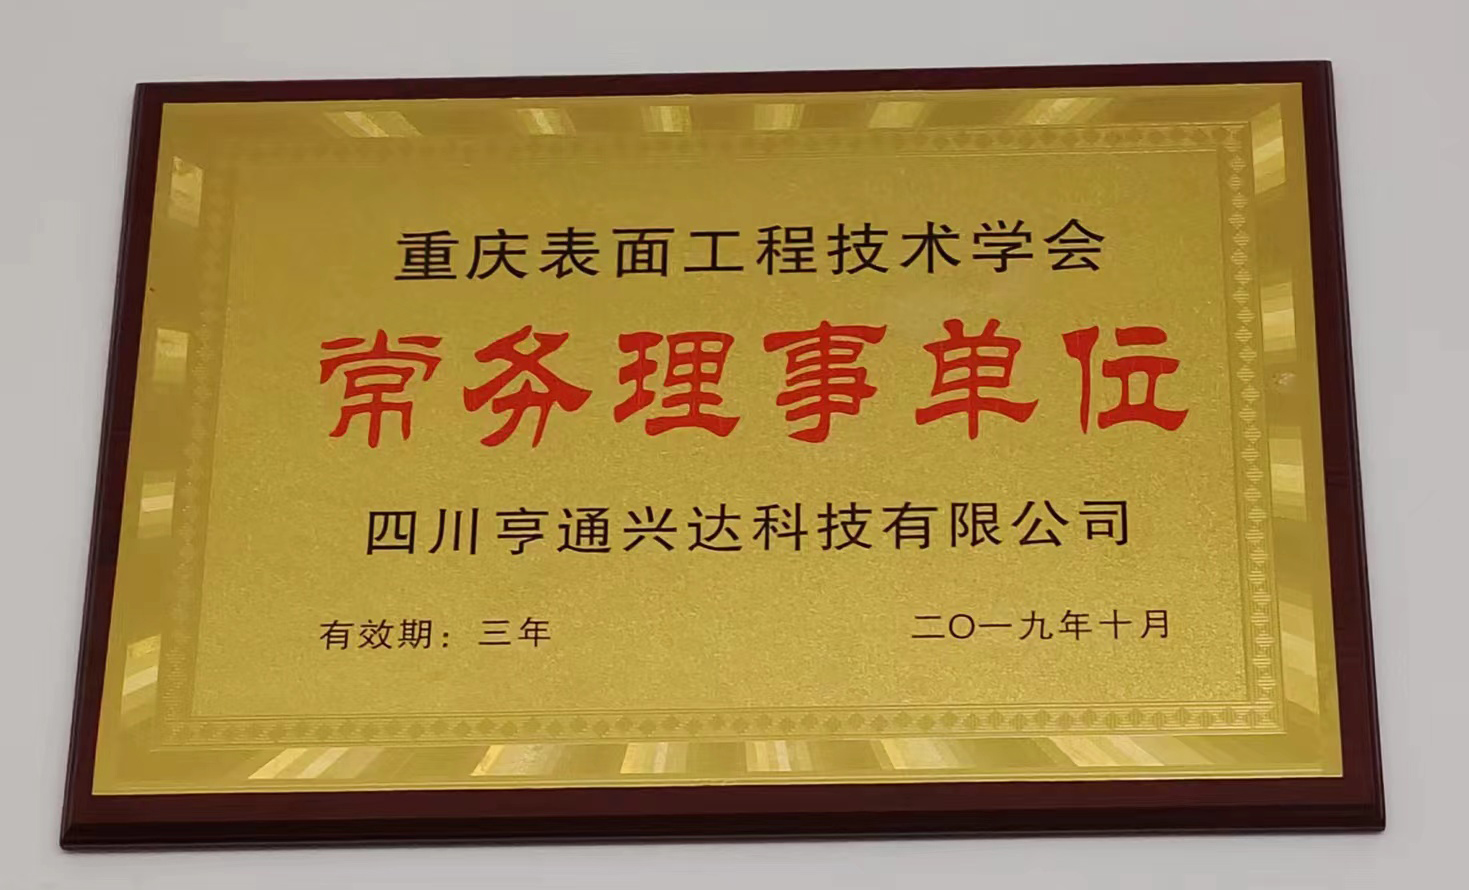 重慶表面工程技術學會2019常務理事單位